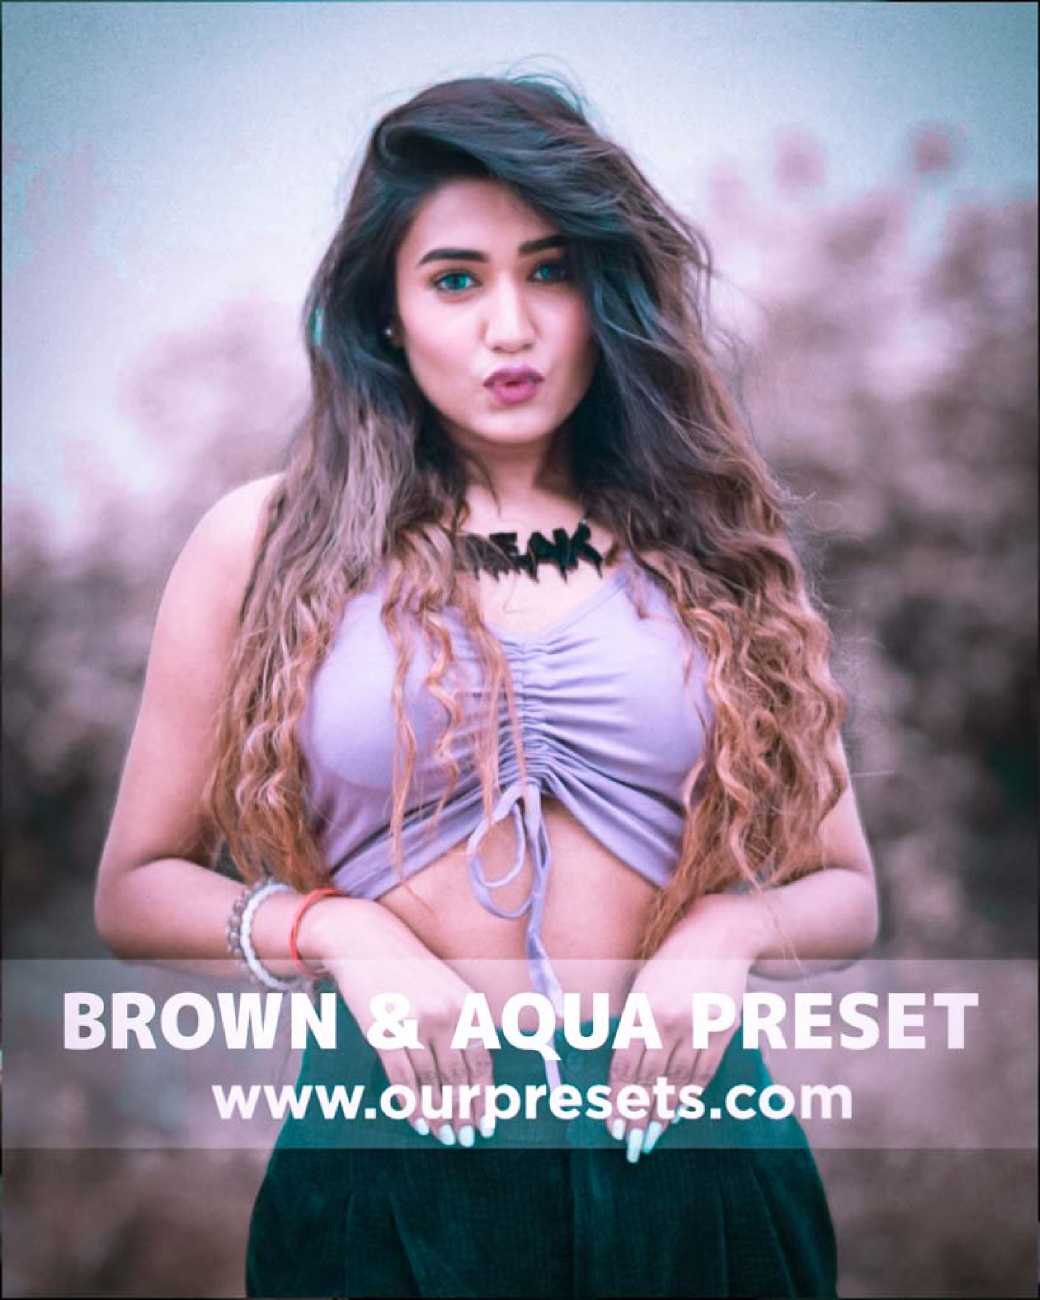 Brown & aqua preset download